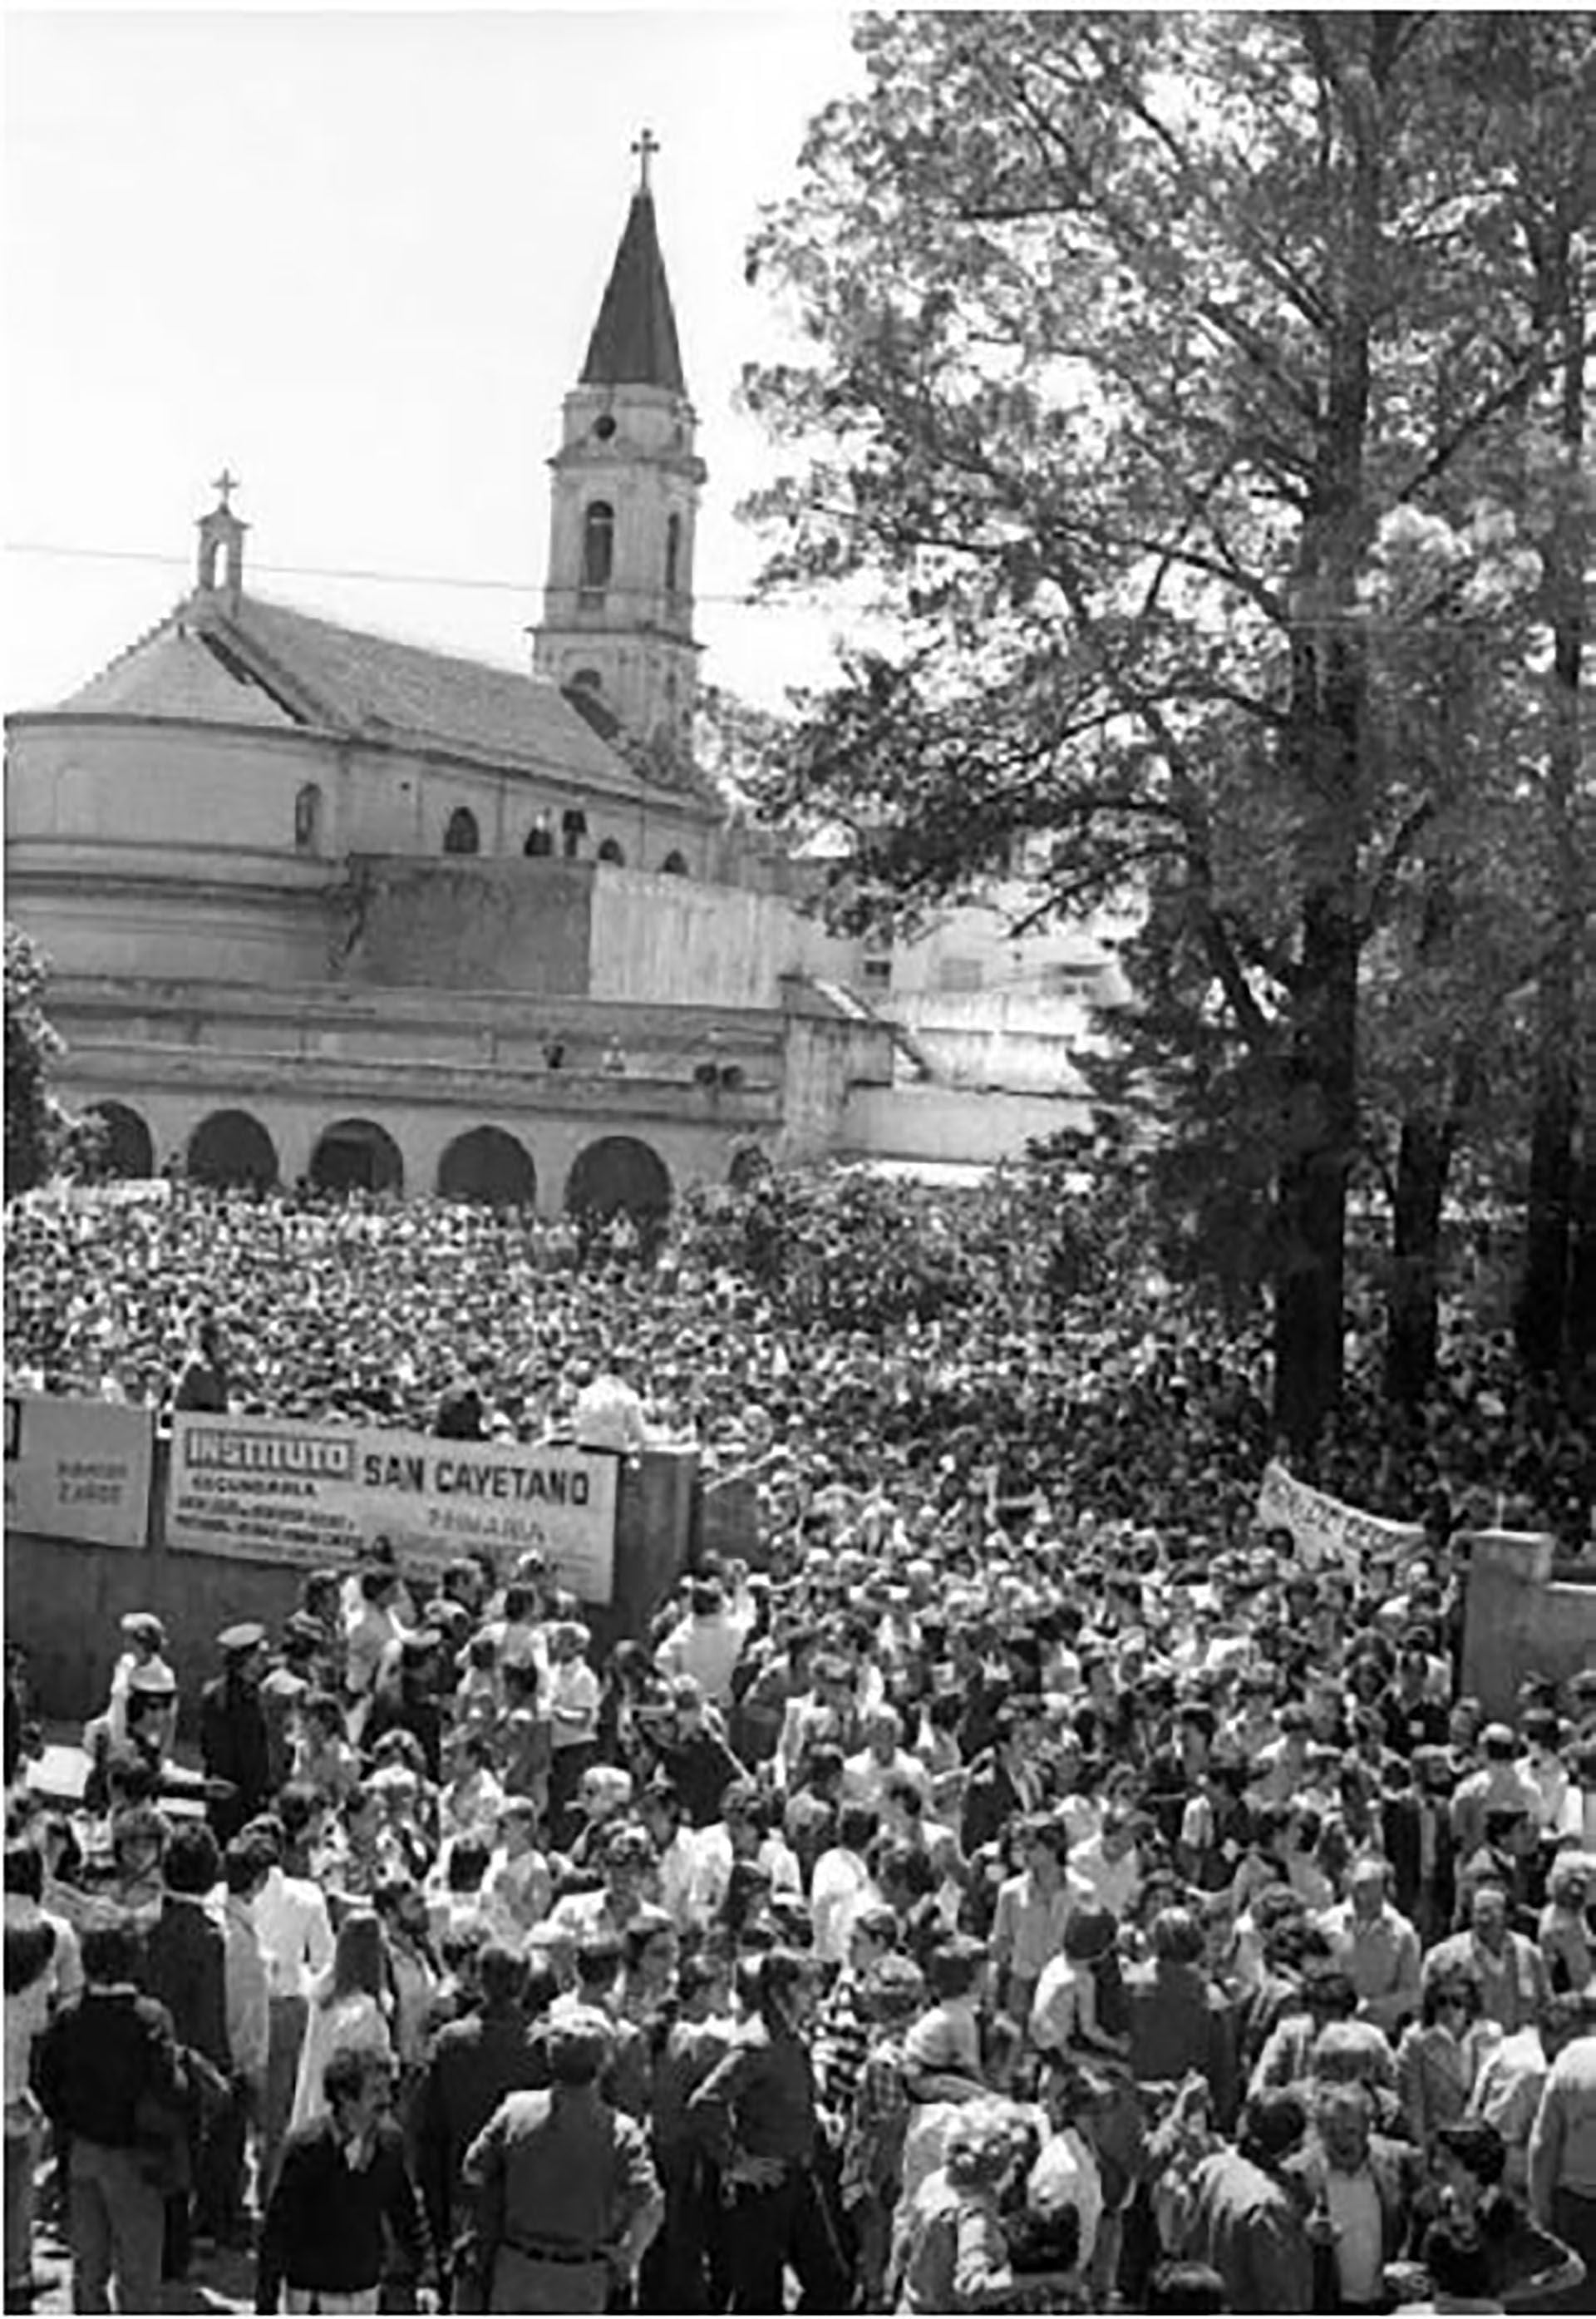 Marcha de la CGT al santuario de San Cayetano en 1981. Fue la primera movilización contra la Dictadura